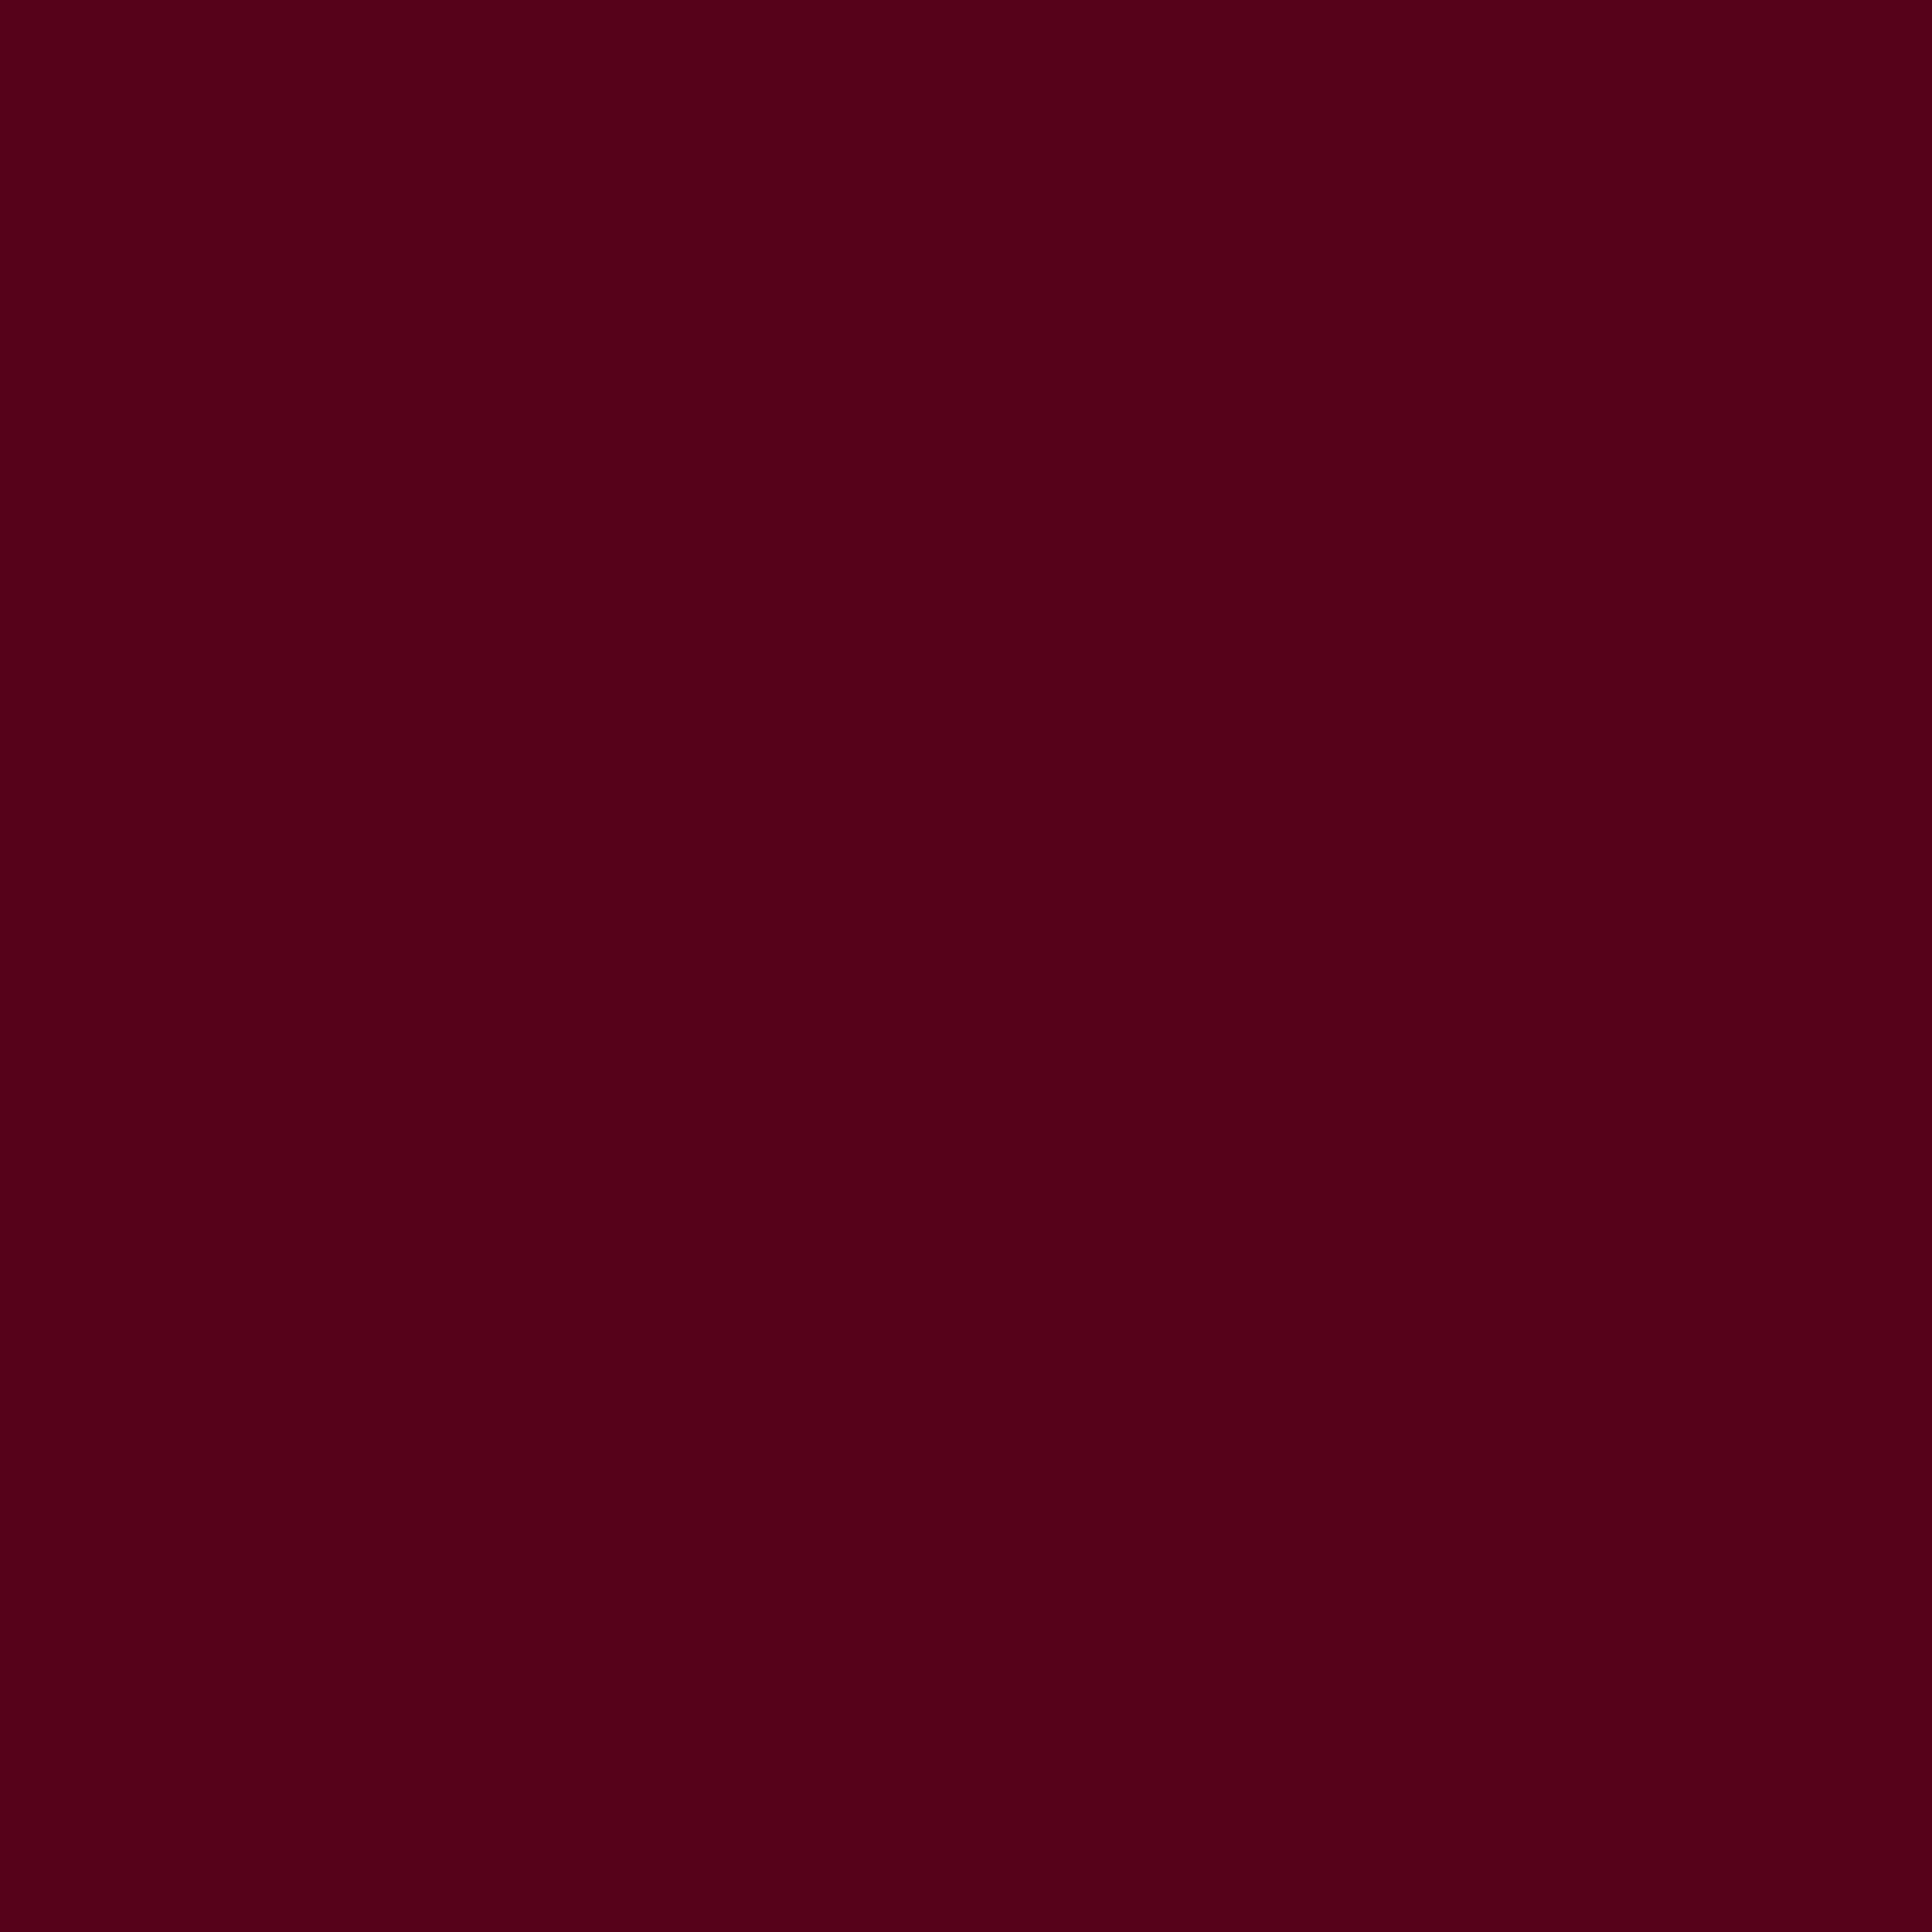 3600x3600 Dark Scarlet Solid Color Background